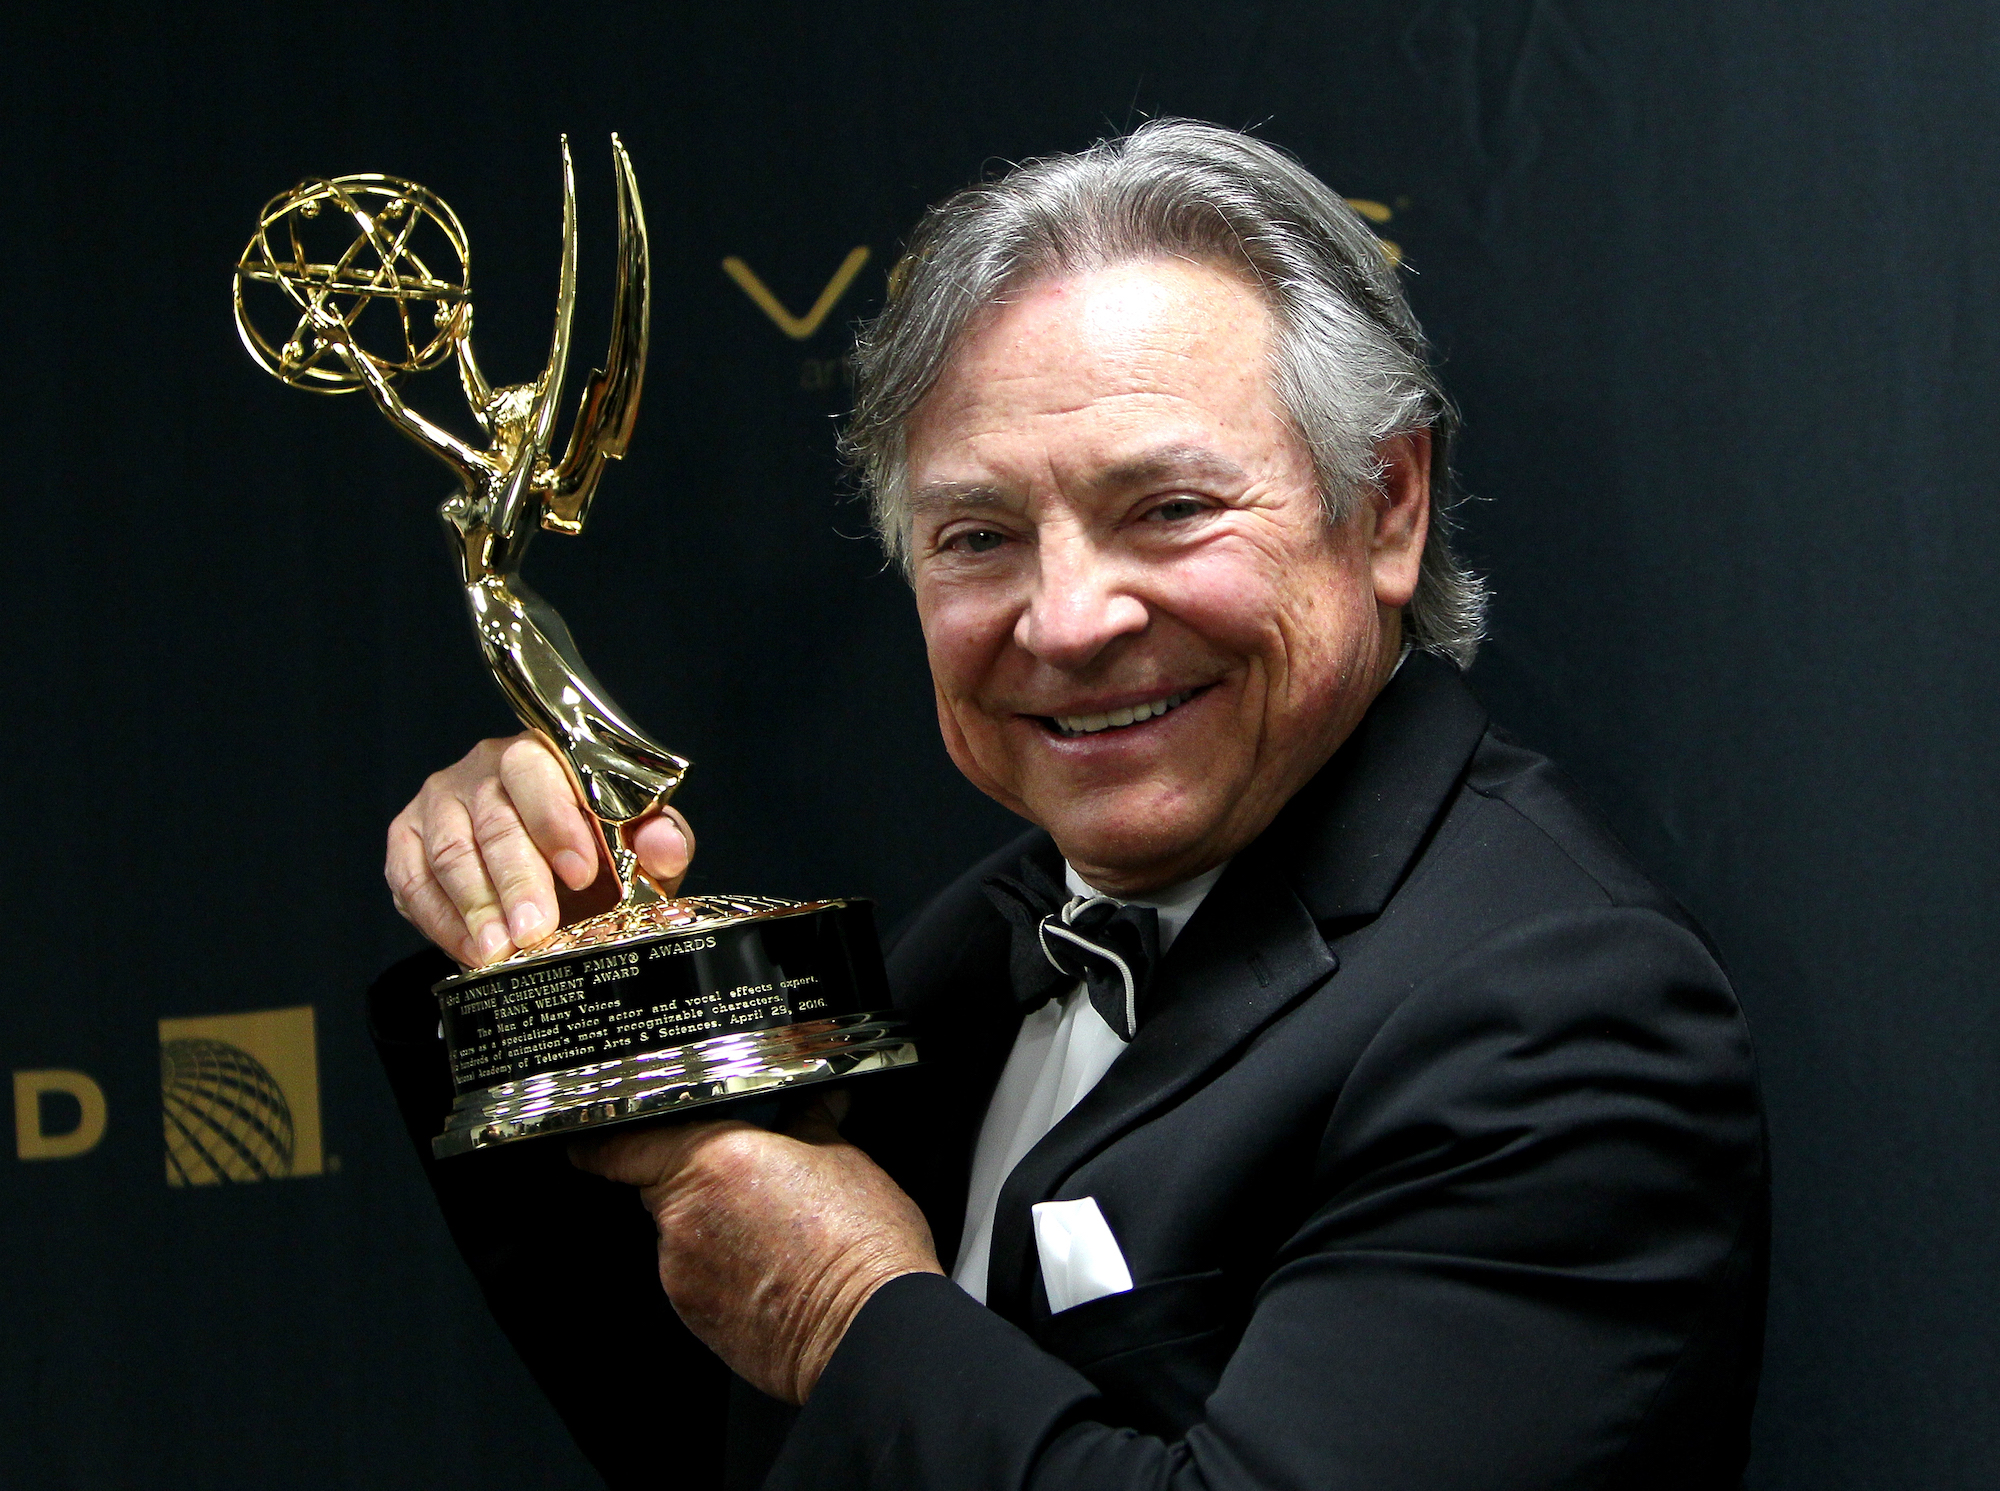 Frank Welker smiling, holding an Emmy Award